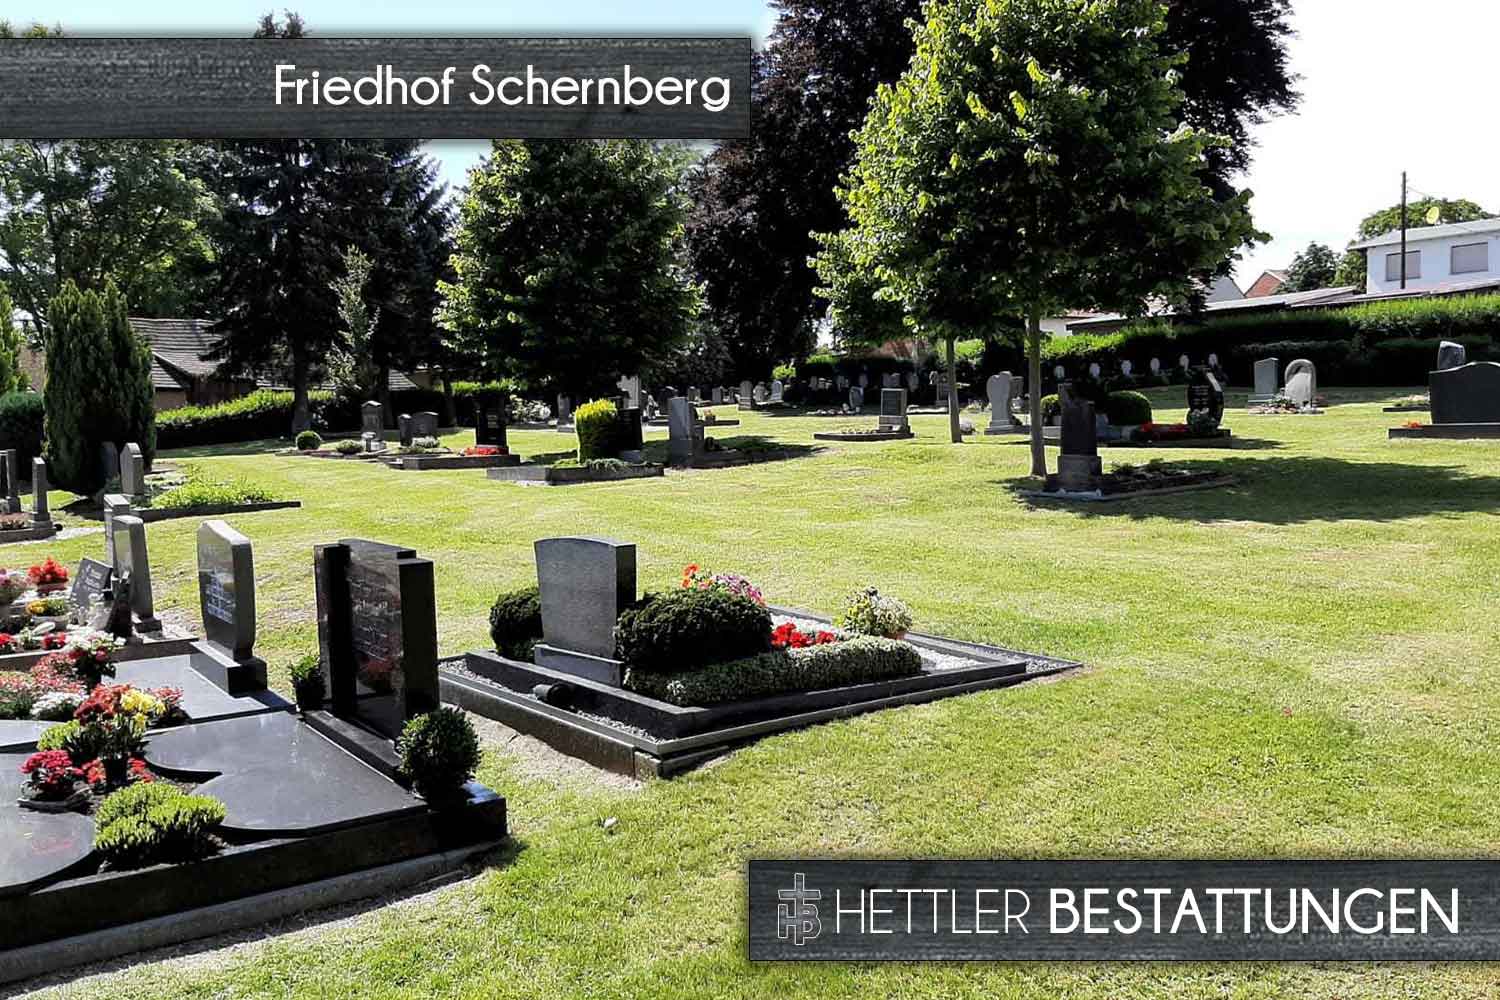 Friedhof in Schernberg. Ihr Ort des Abschieds mit Hettler Bestattungen.